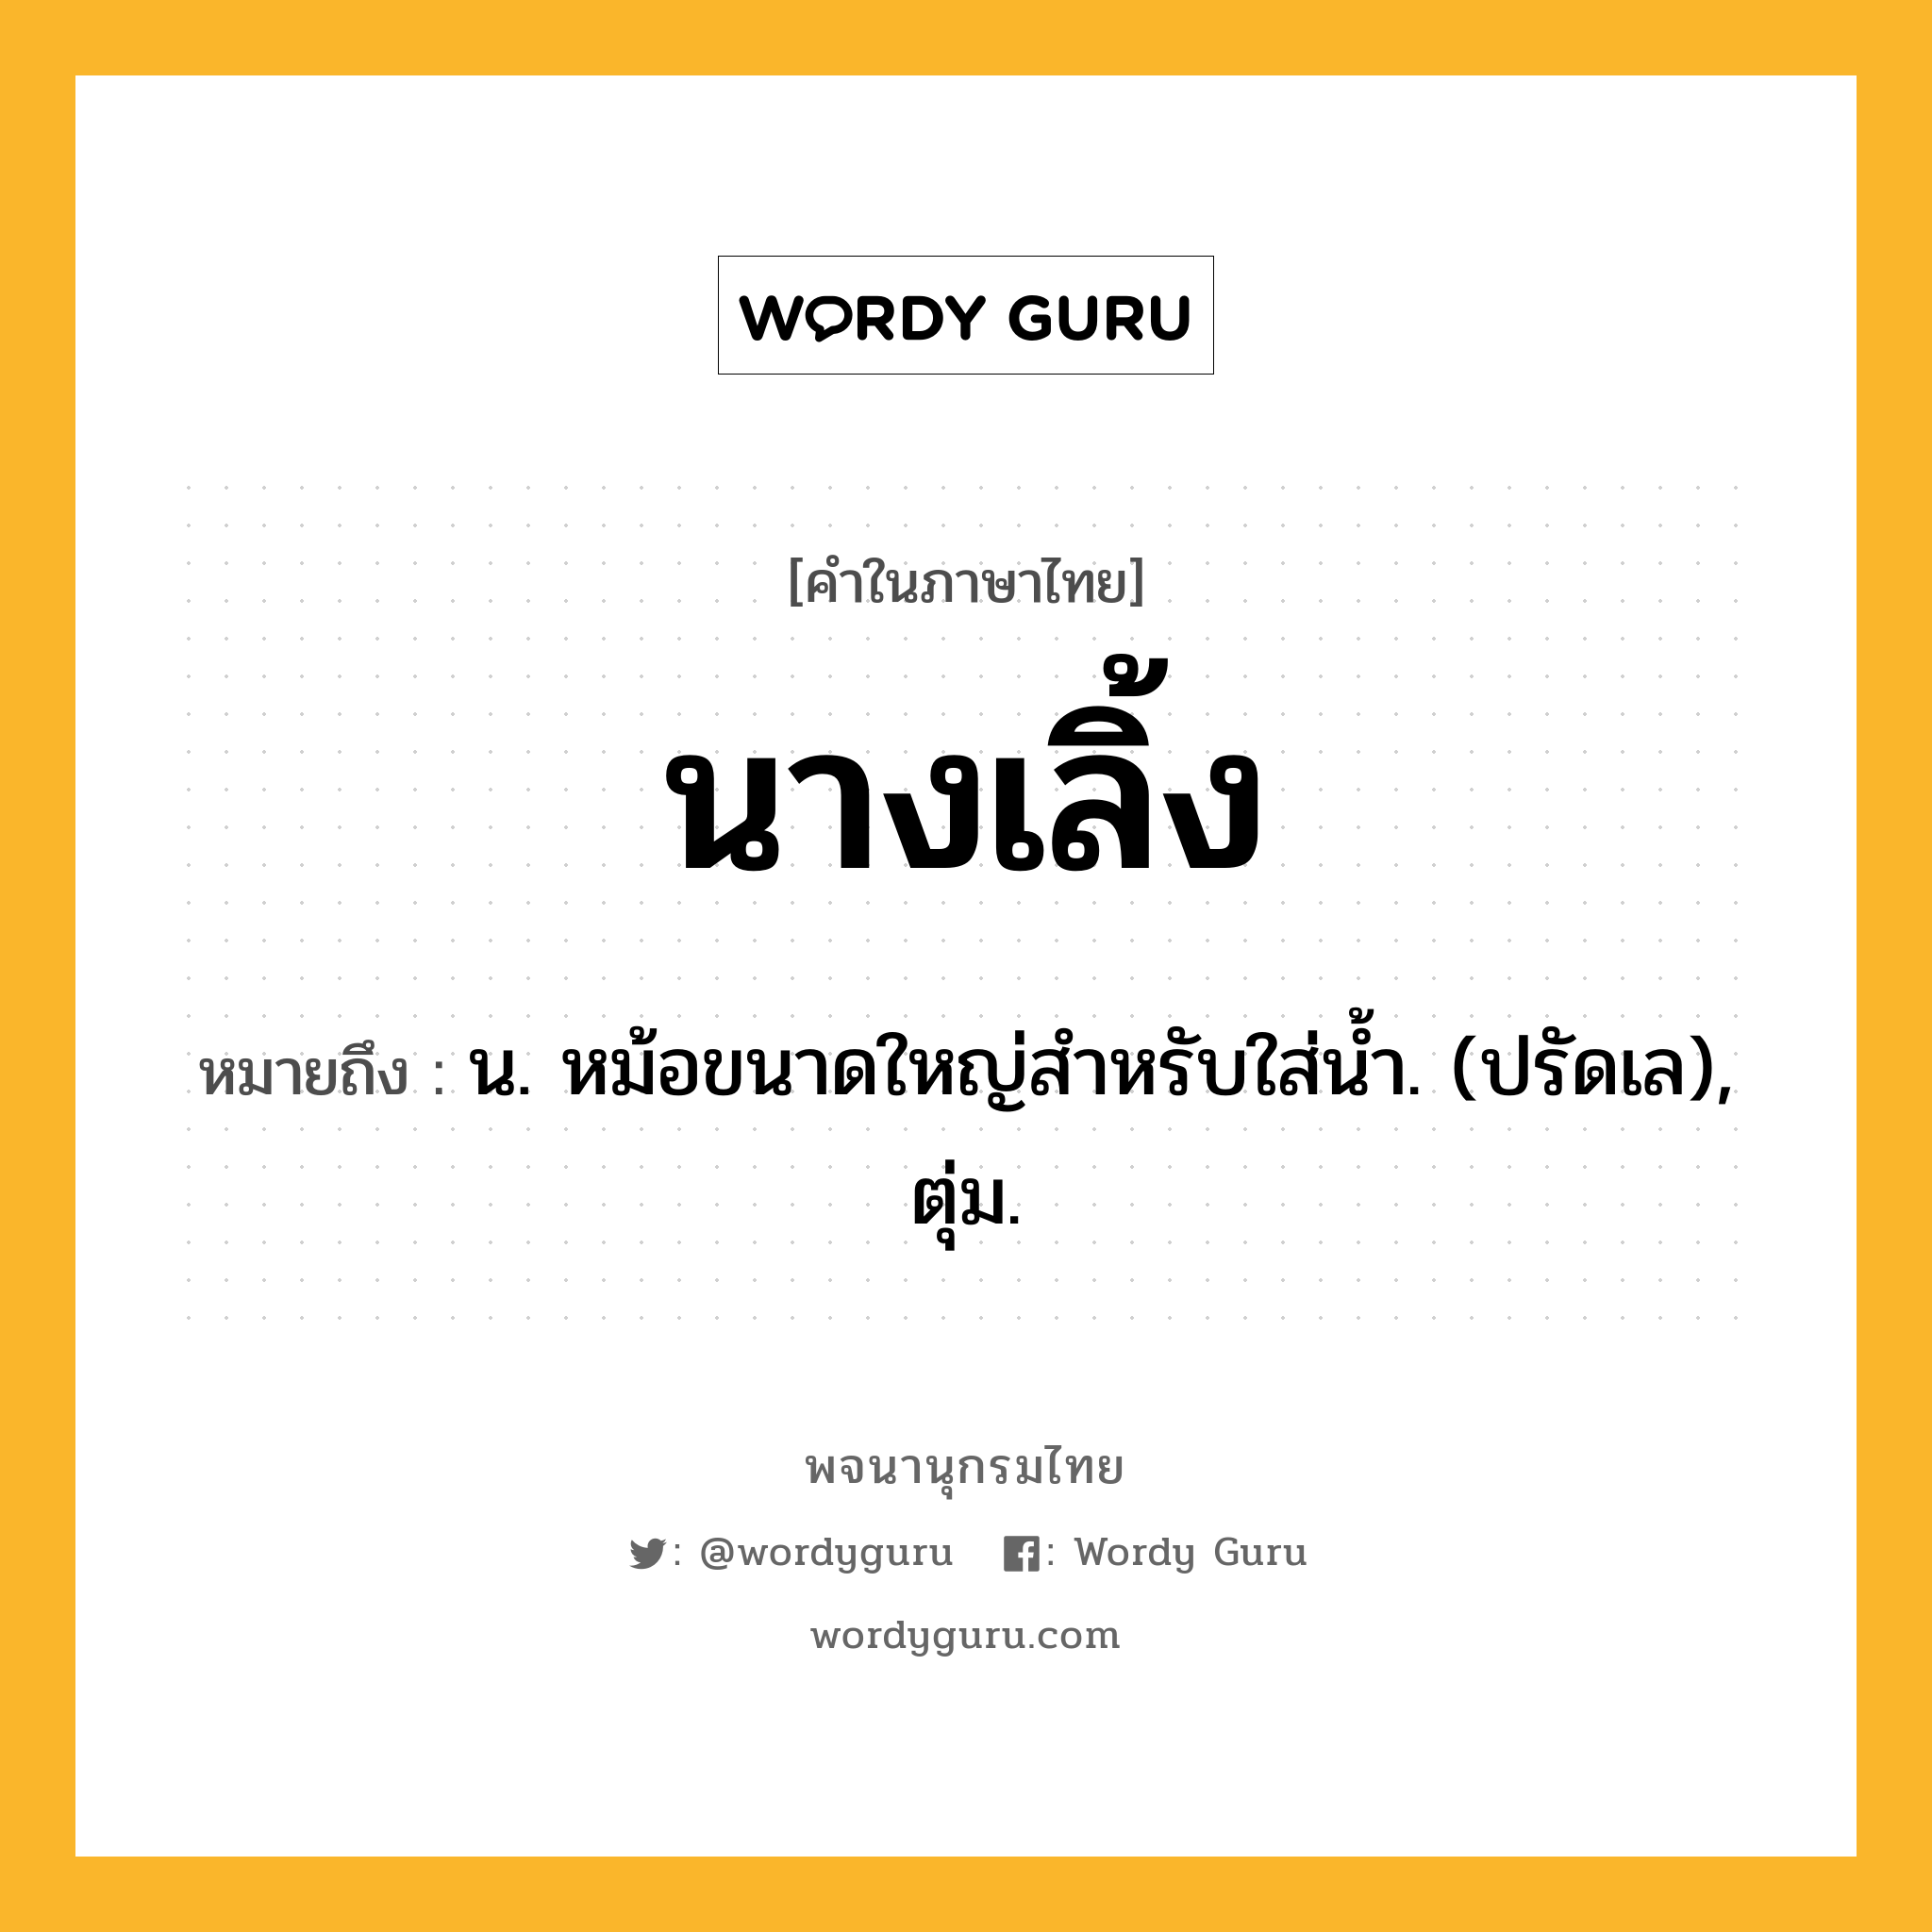 นางเลิ้ง หมายถึงอะไร?, คำในภาษาไทย นางเลิ้ง หมายถึง น. หม้อขนาดใหญ่สําหรับใส่นํ้า. (ปรัดเล), ตุ่ม.